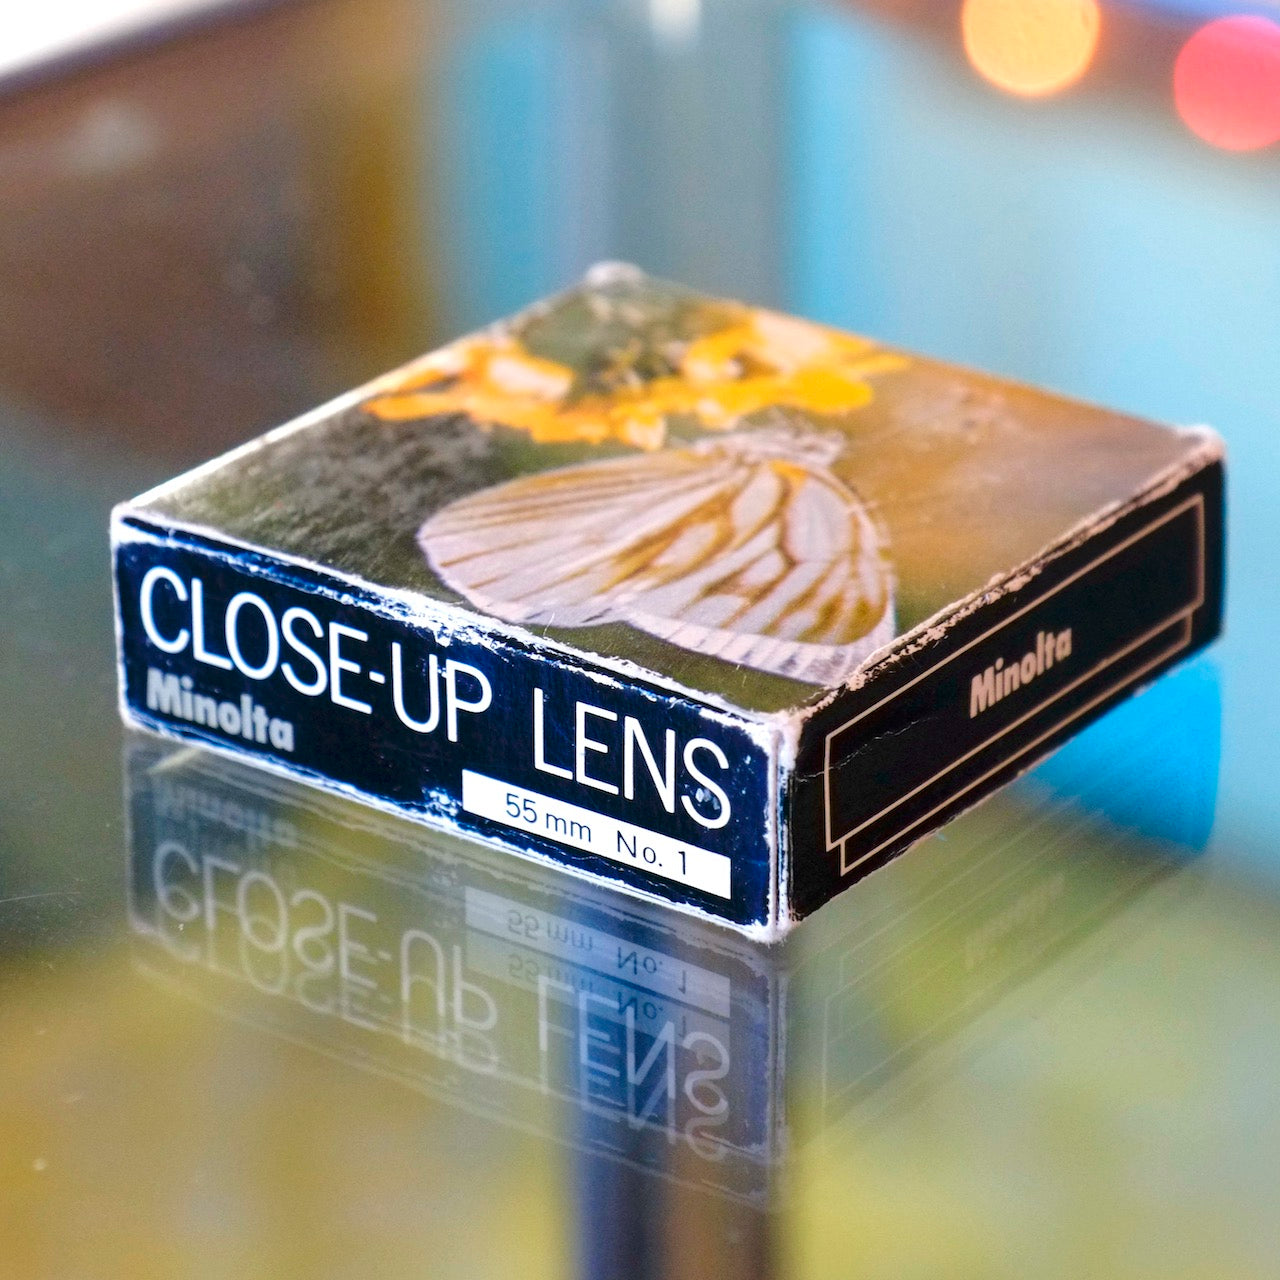 Minolta Close-Up Lens No.1 (55mm)